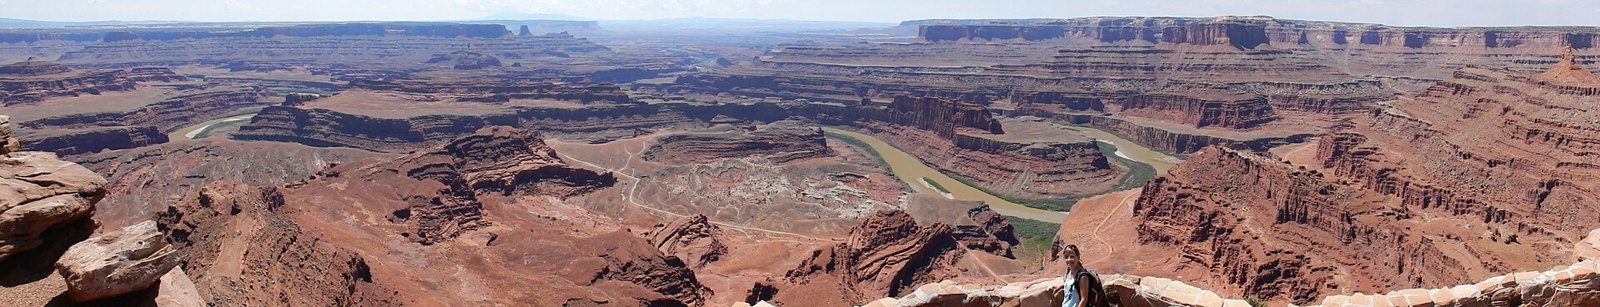 Canyonlands y Dead Horse Point, tierra de cañones - Costa oeste de Estados Unidos: 25 días en ruta por el far west (19)